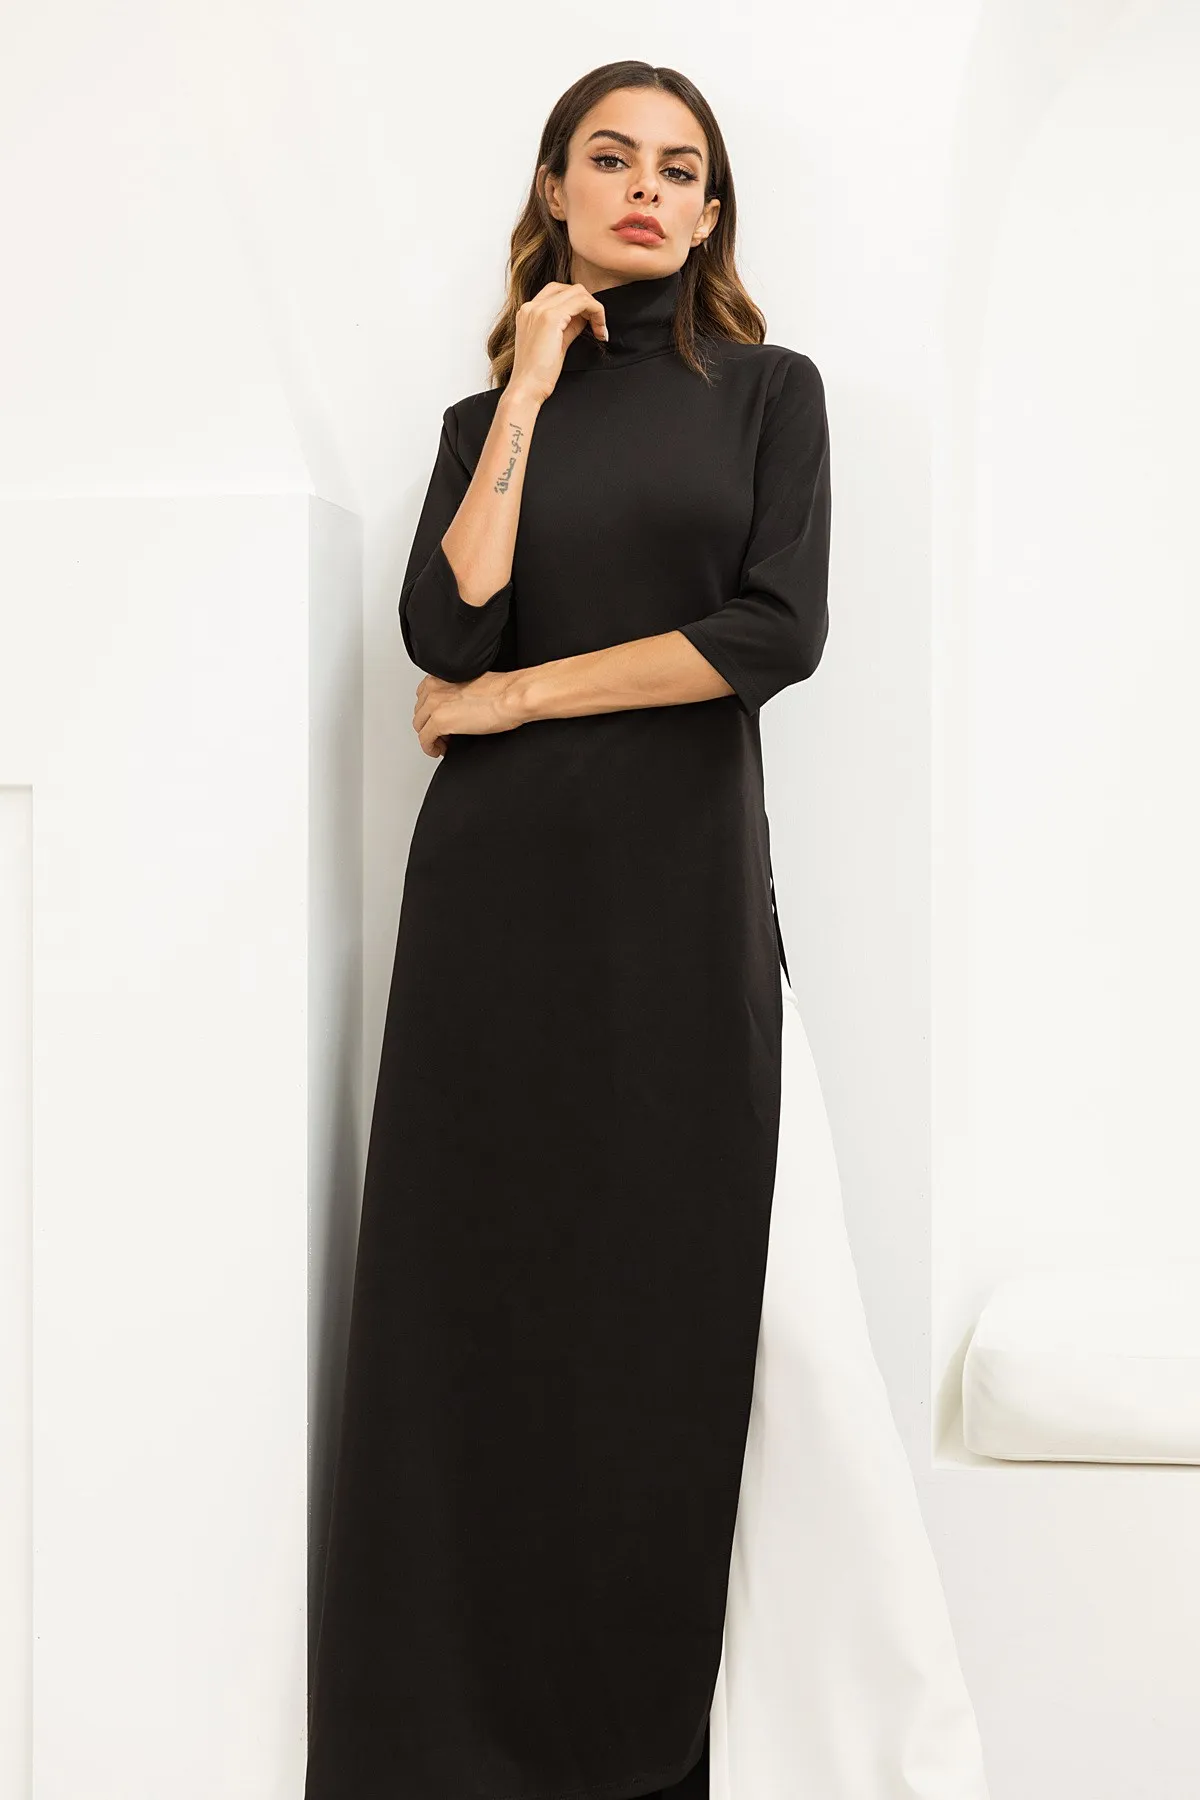 Женское Ассиметричное платье в западном стиле размера плюс, модное Платье макси с высоким воротом, обтягивающее Черное Трикотажное длинное платье - Цвет: Черный